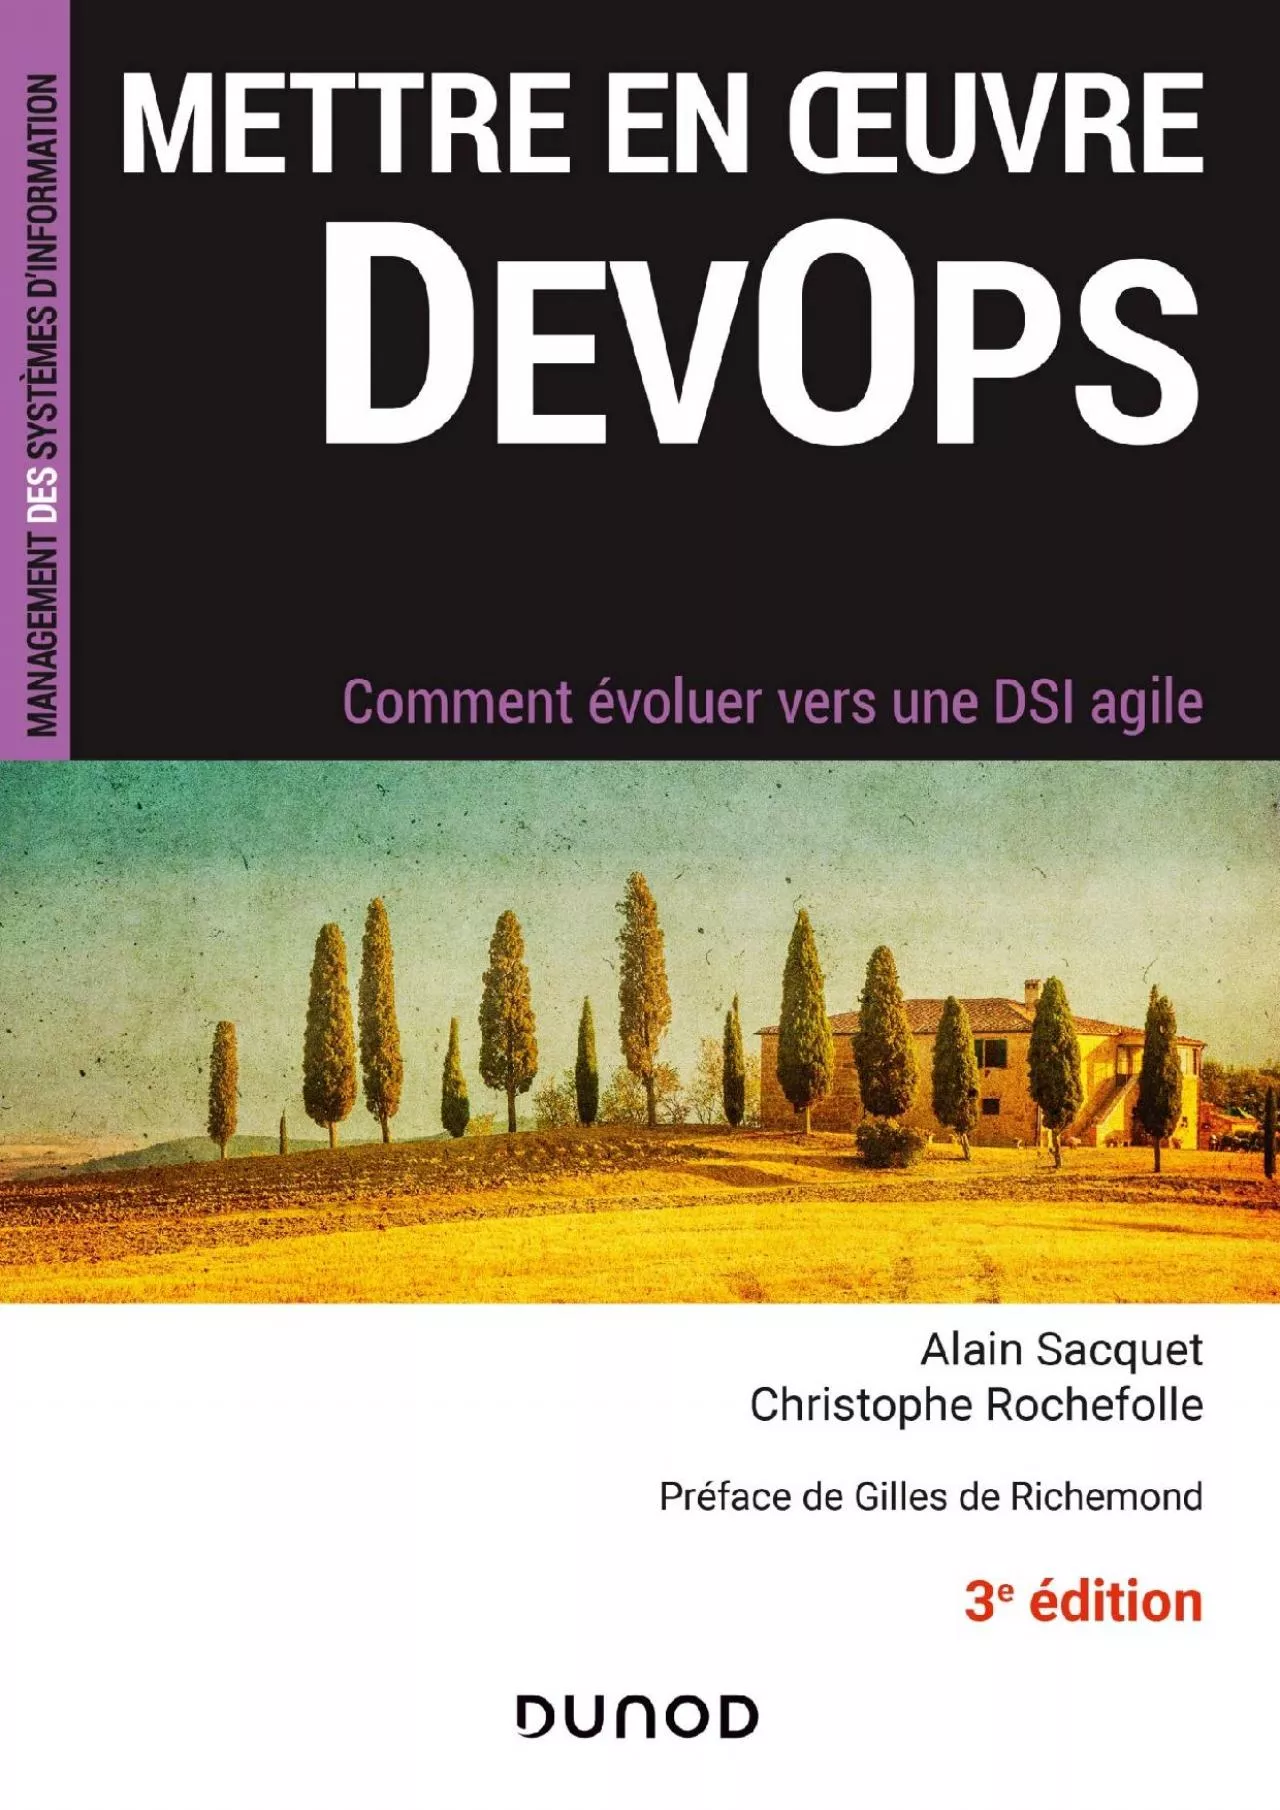 (DOWNLOAD)-Mettre en oeuvre DevOps - 3e éd.: Comment évoluer vers une DSI agile (Etude,